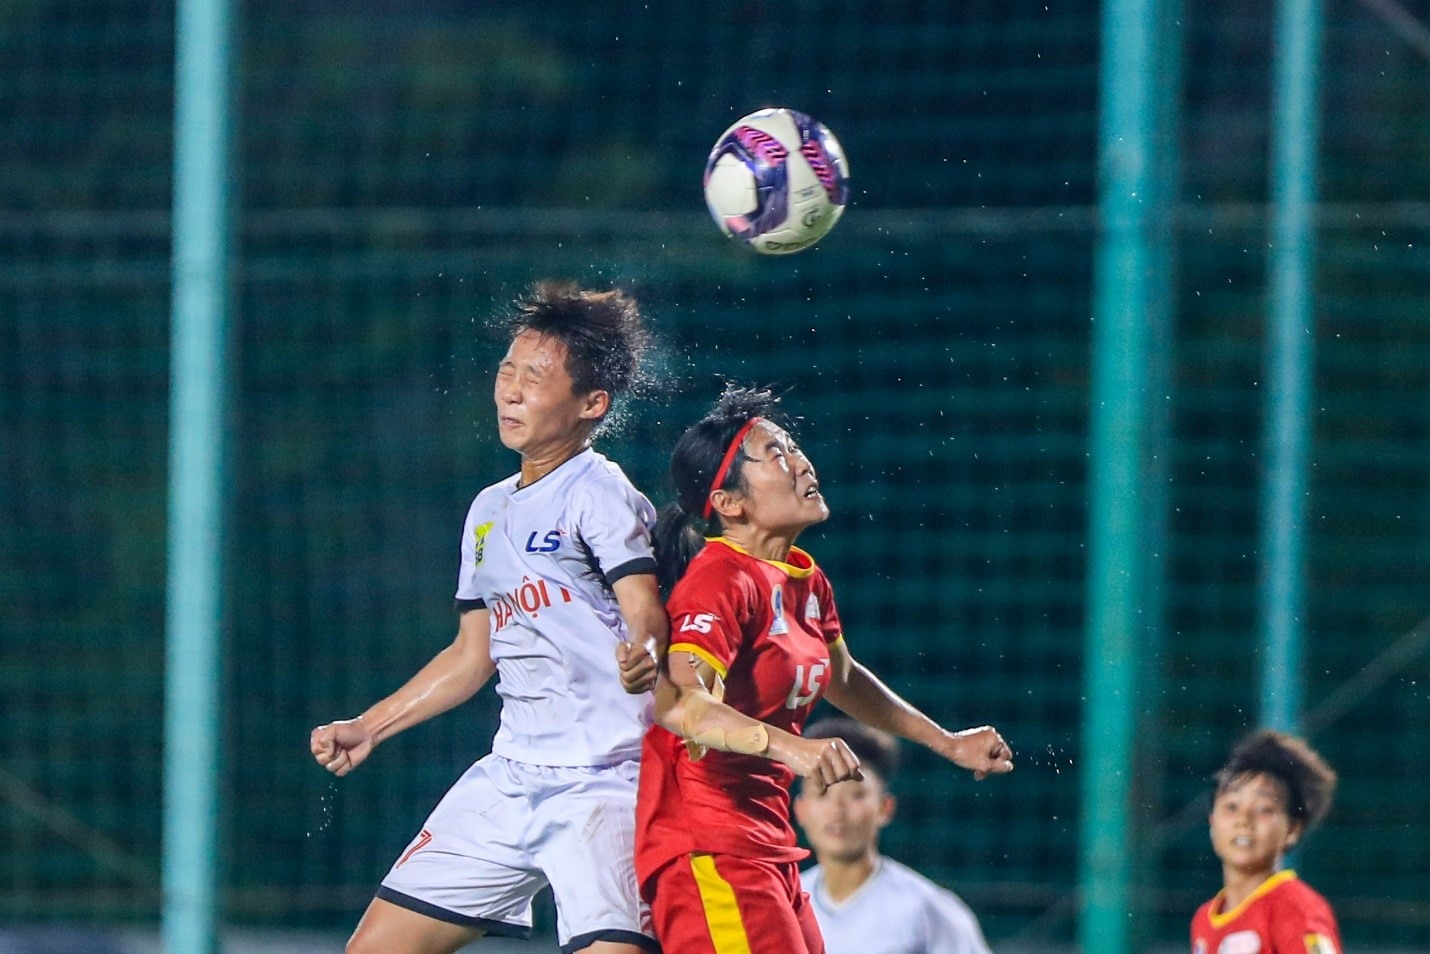 Phút 83, Hà Nội I đưa được bóng vào lưới của Kim Thanh, nhưng trọng tài không công nhận bàn thắng do Hải Linh đã có tình huống phạm lỗi trước đó. Hòa 0-0 trong 90 phút, hai đội dắt nhau vào loạt sút luân lưu để phân định thắng thua.